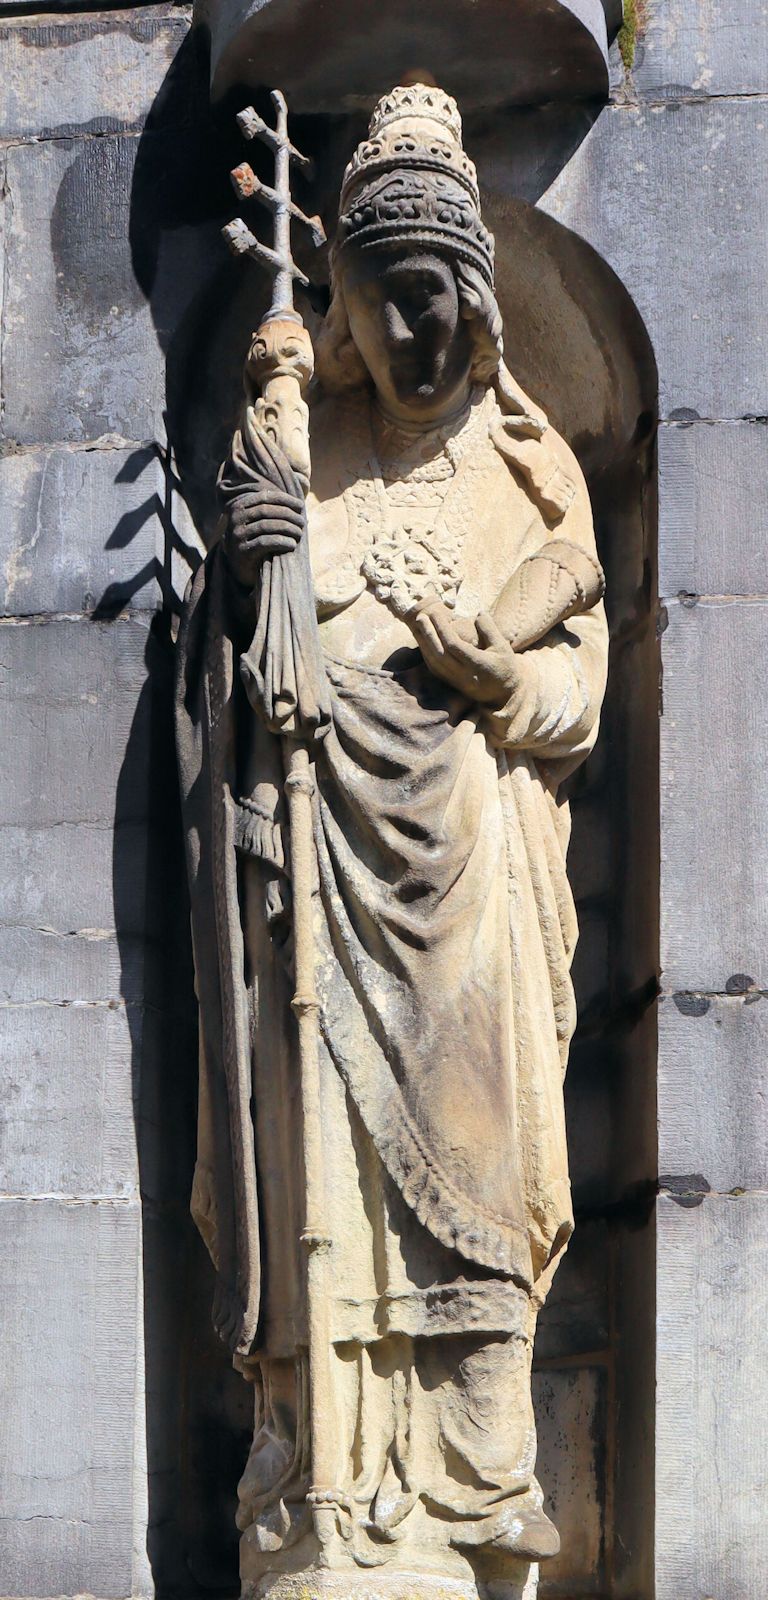 Statue vor der Kirche St. Kornelius in Kornelimünster